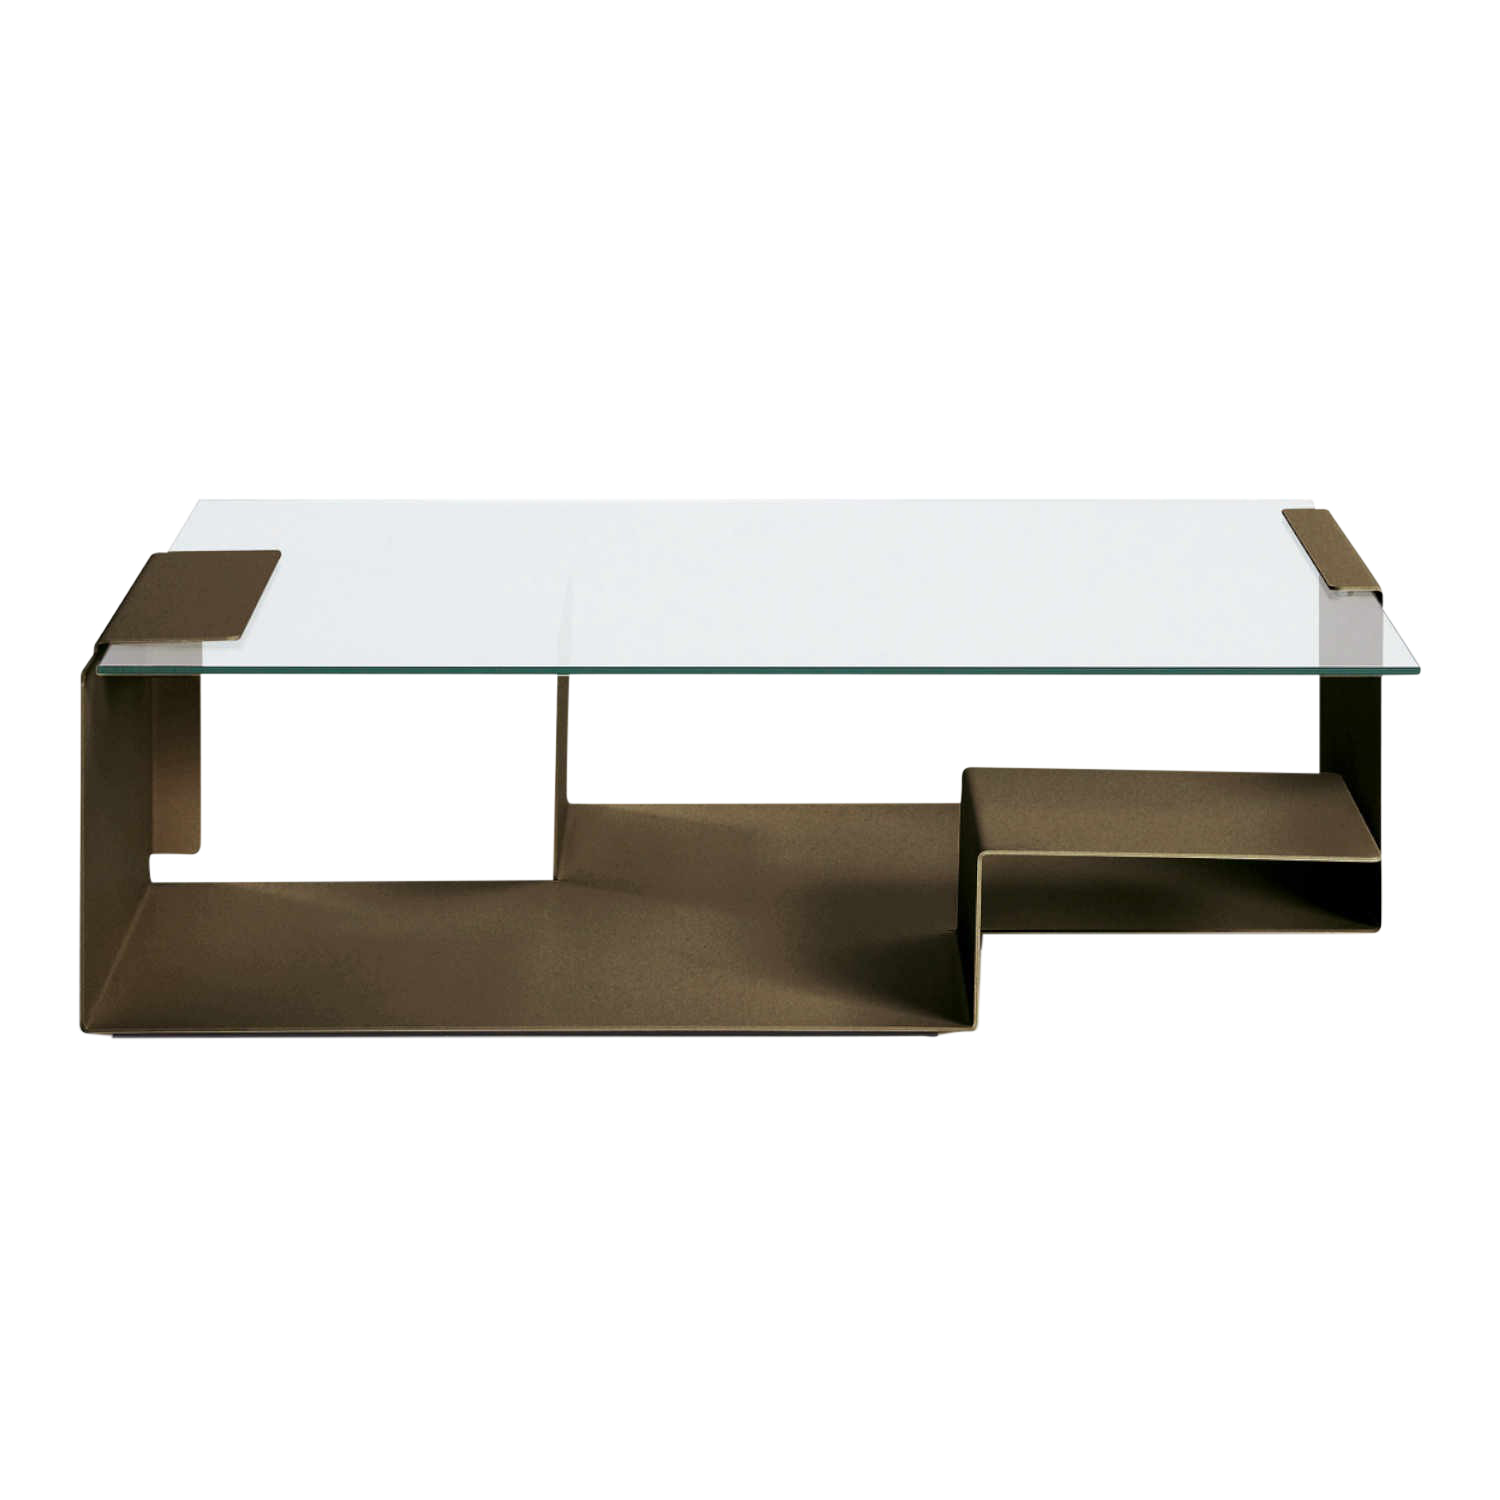 Diana D Side Table Beistelltisch, Farbe graublau ral 5008 von ClassiCon